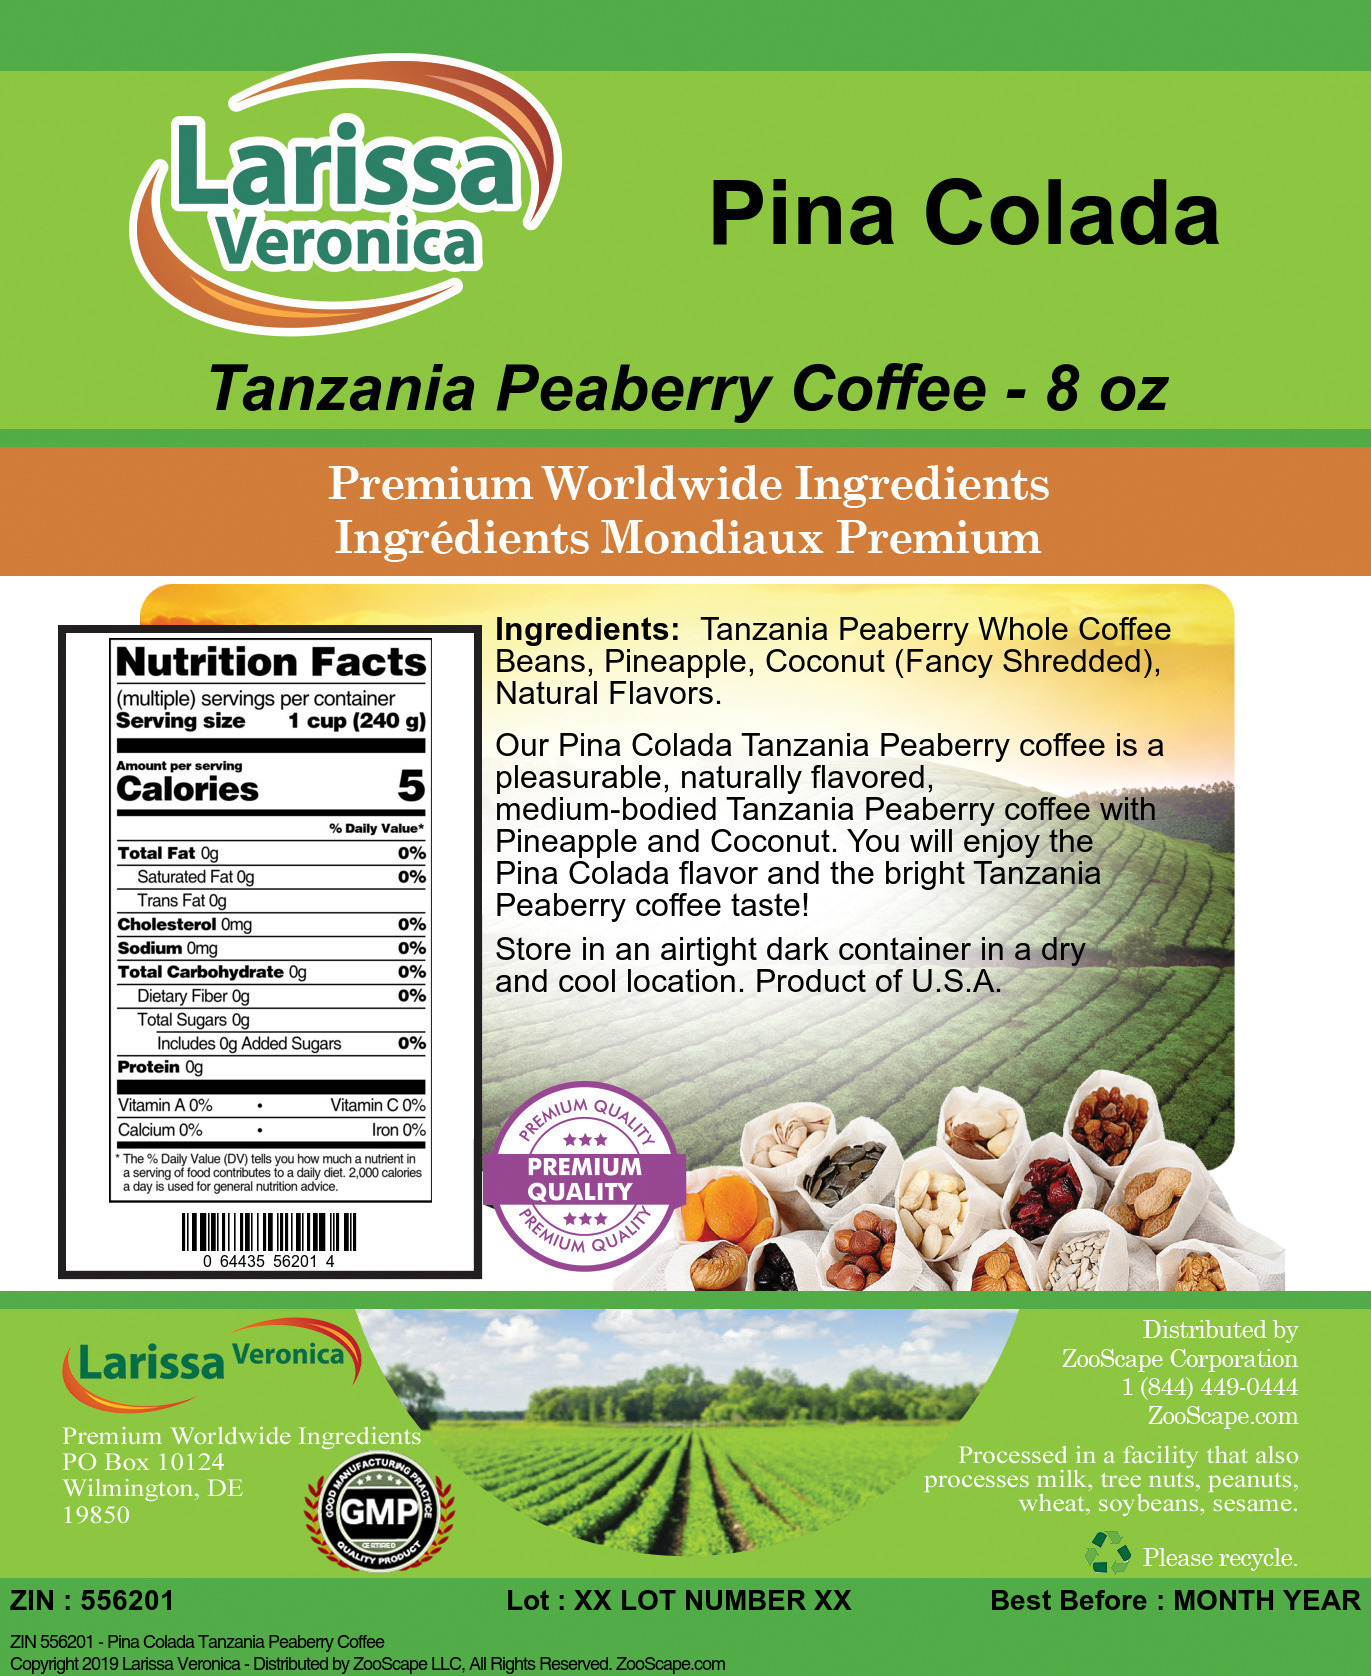 Pina Colada Tanzania Peaberry Coffee - Label